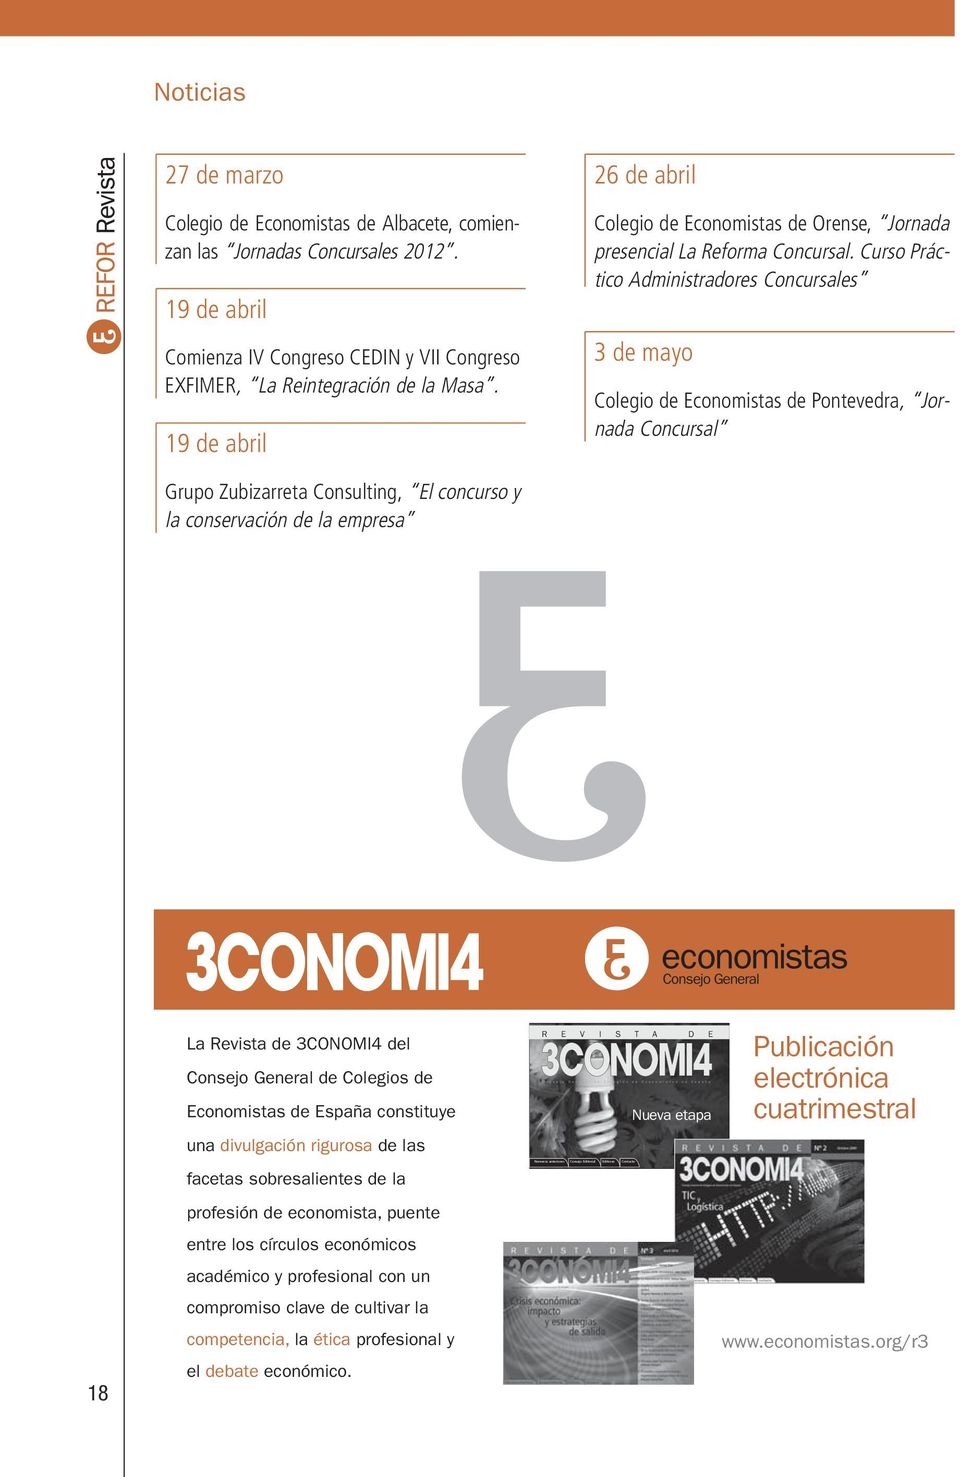 19 de abril 26 de abril Colegio de Economistas de Orense, Jornada presencial La Reforma Concursal.